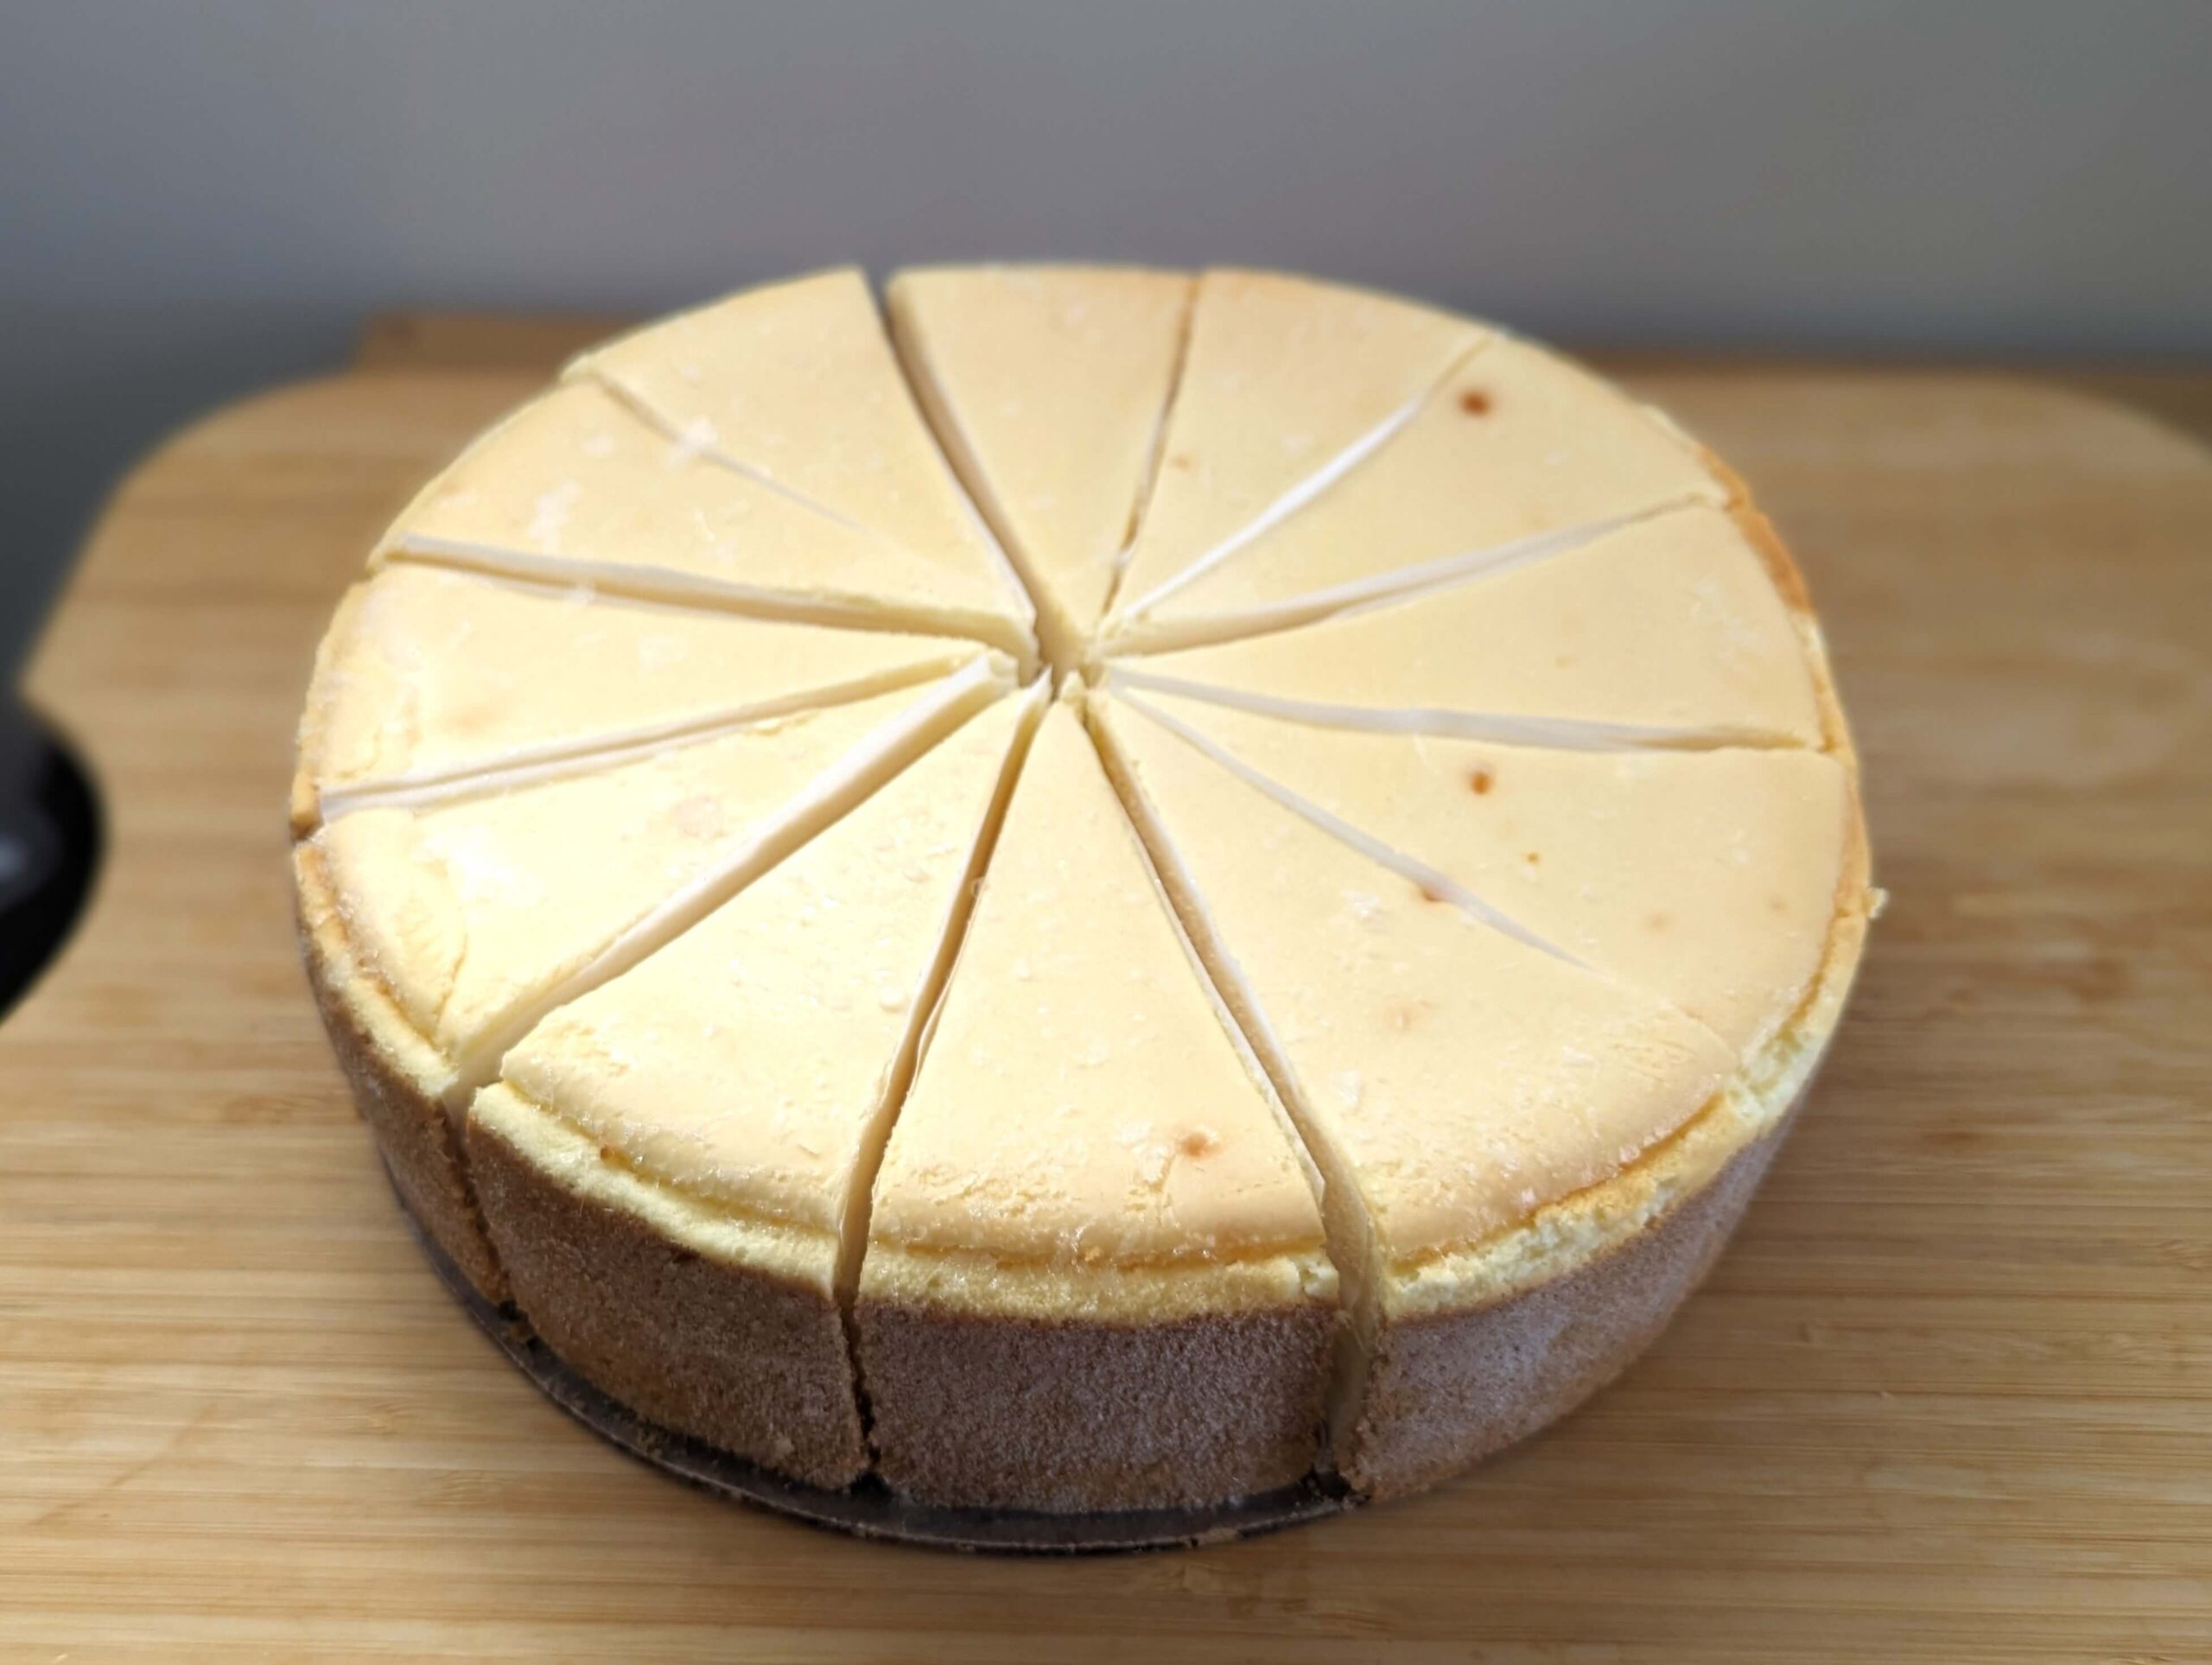 コストコ(COSTCO)のTHE CHEESECAKE FACTORY オリジナルチーズケーキ (9)